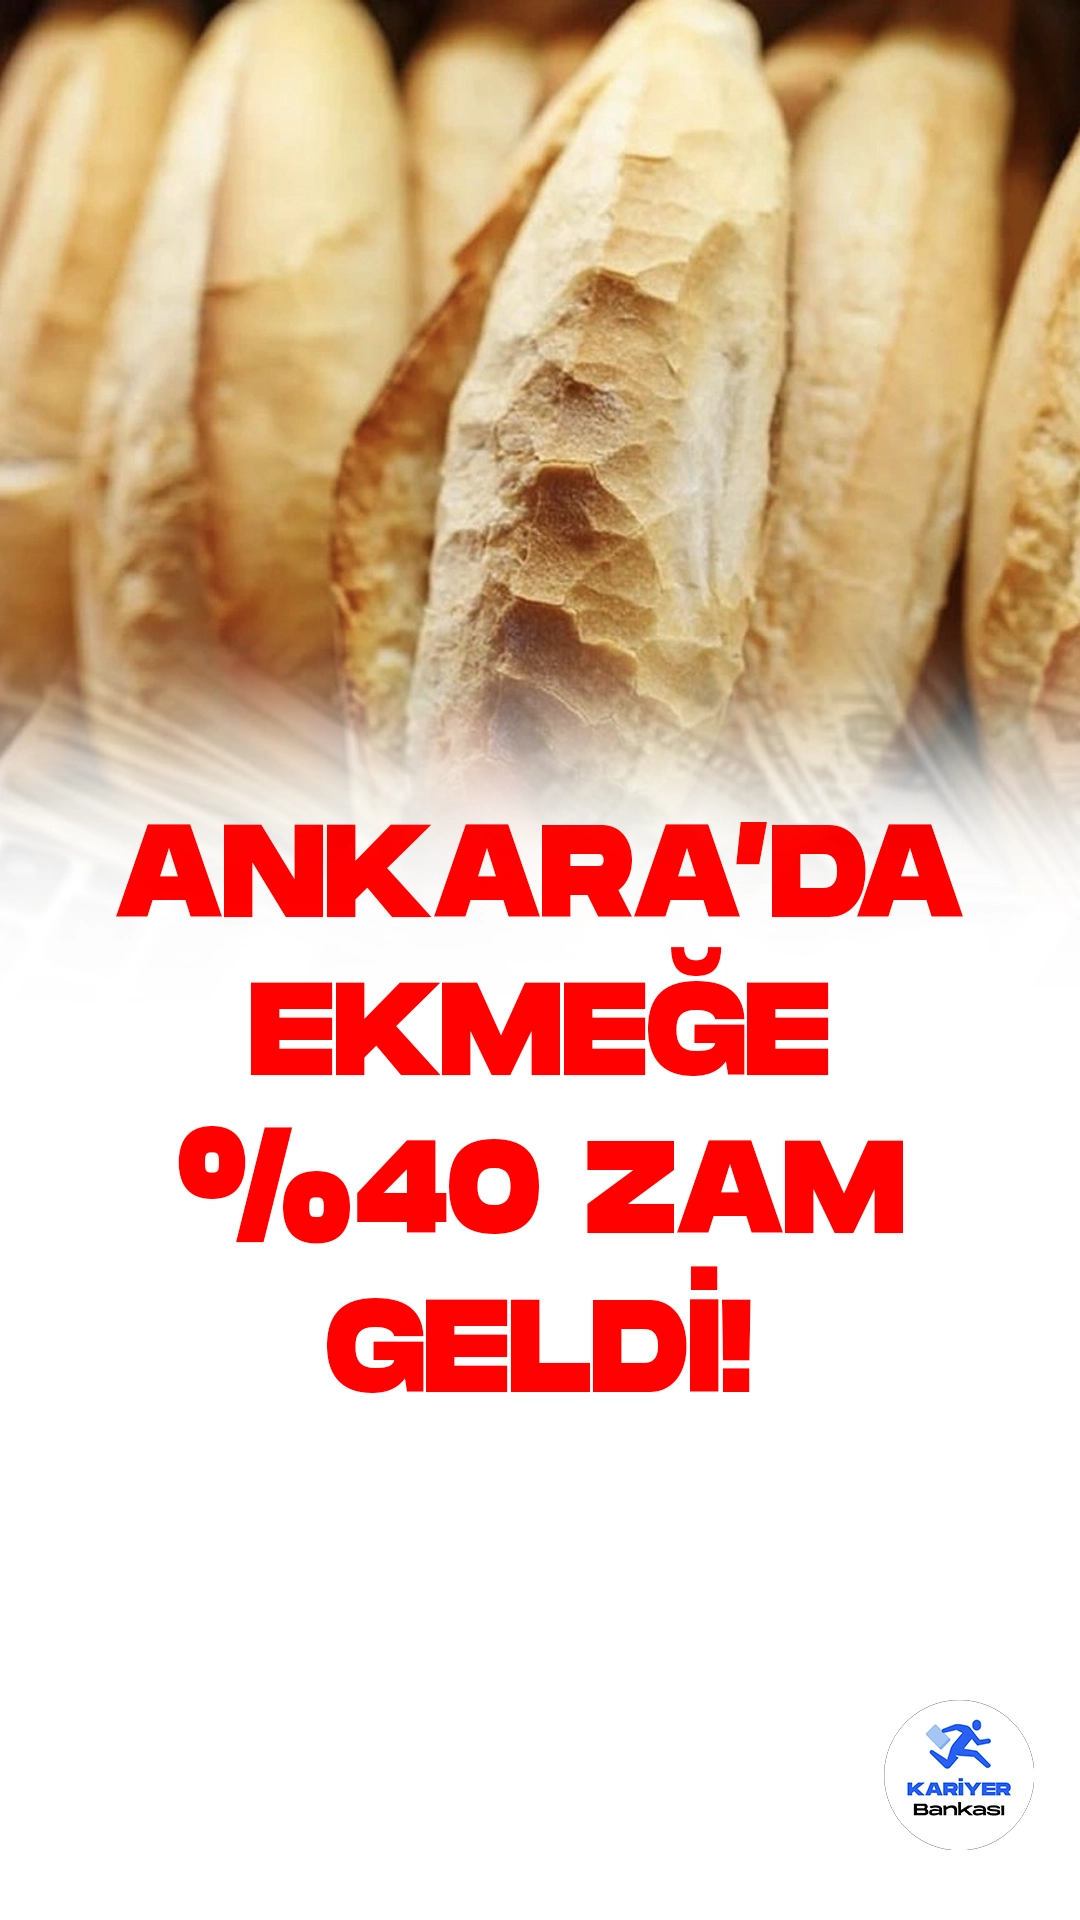 Ankara'da Ekmek Fiyatlarına Yüzde 40 Zam!Ankara Fırıncılar Odası'nın aldığı kararla, 200 gram ekmeğin fiyatı 20 Temmuz itibarıyla yüzde 40 artarak 5 liradan 7 liraya yükseldi.